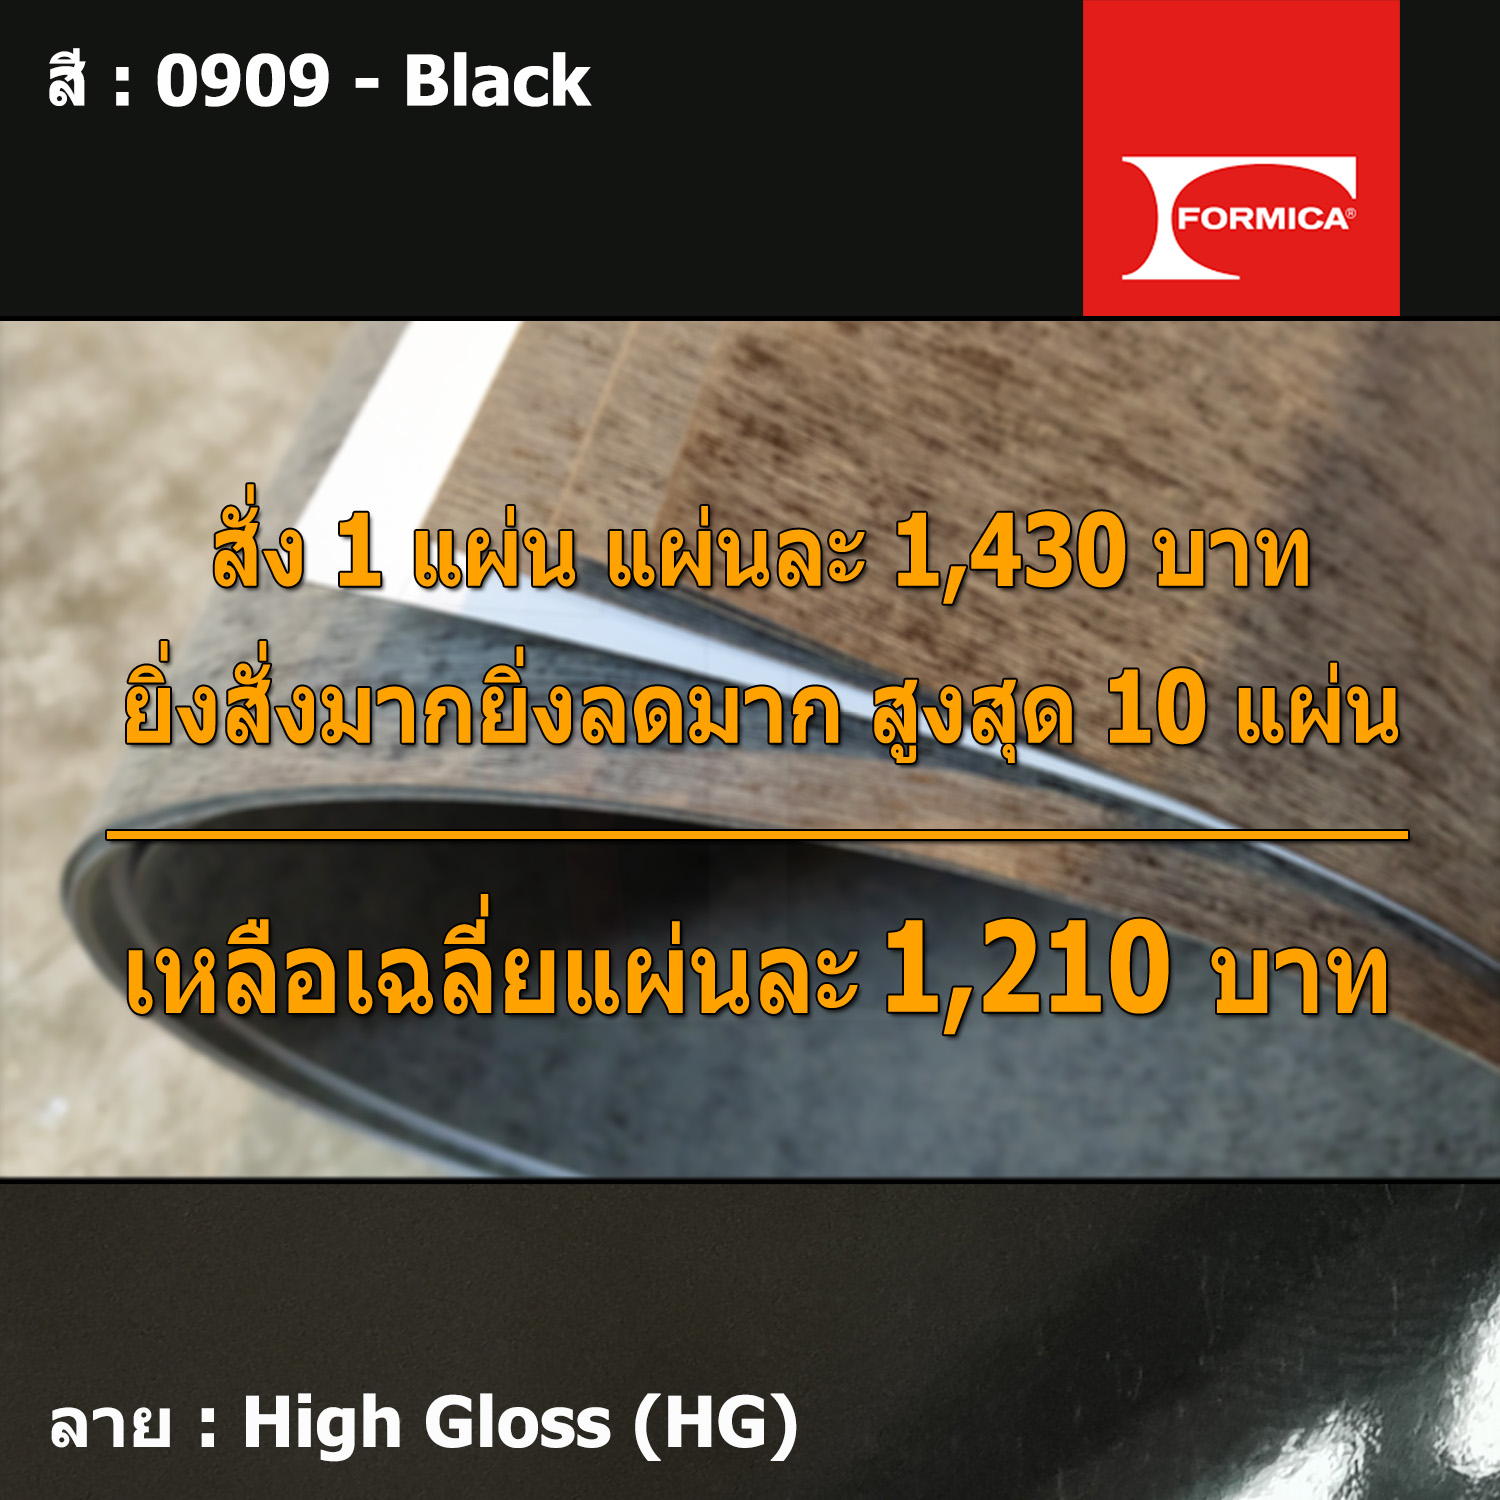 แผ่นโฟเมก้า แผ่นลามิเนต ยี่ห้อ Formica สีดำ รหัส 0909 Black พื้นผิวลาย High Gloss (HG) ขนาด 1220 x 2440 มม. หนา 0.80 มม. ใช้สำหรับงานตกแต่งภายใน งานปิดผิวเฟอร์นิเจอร์ ผนัง และอื่นๆ เพื่อเพิ่มความสวยงาม formica laminate 0909HG